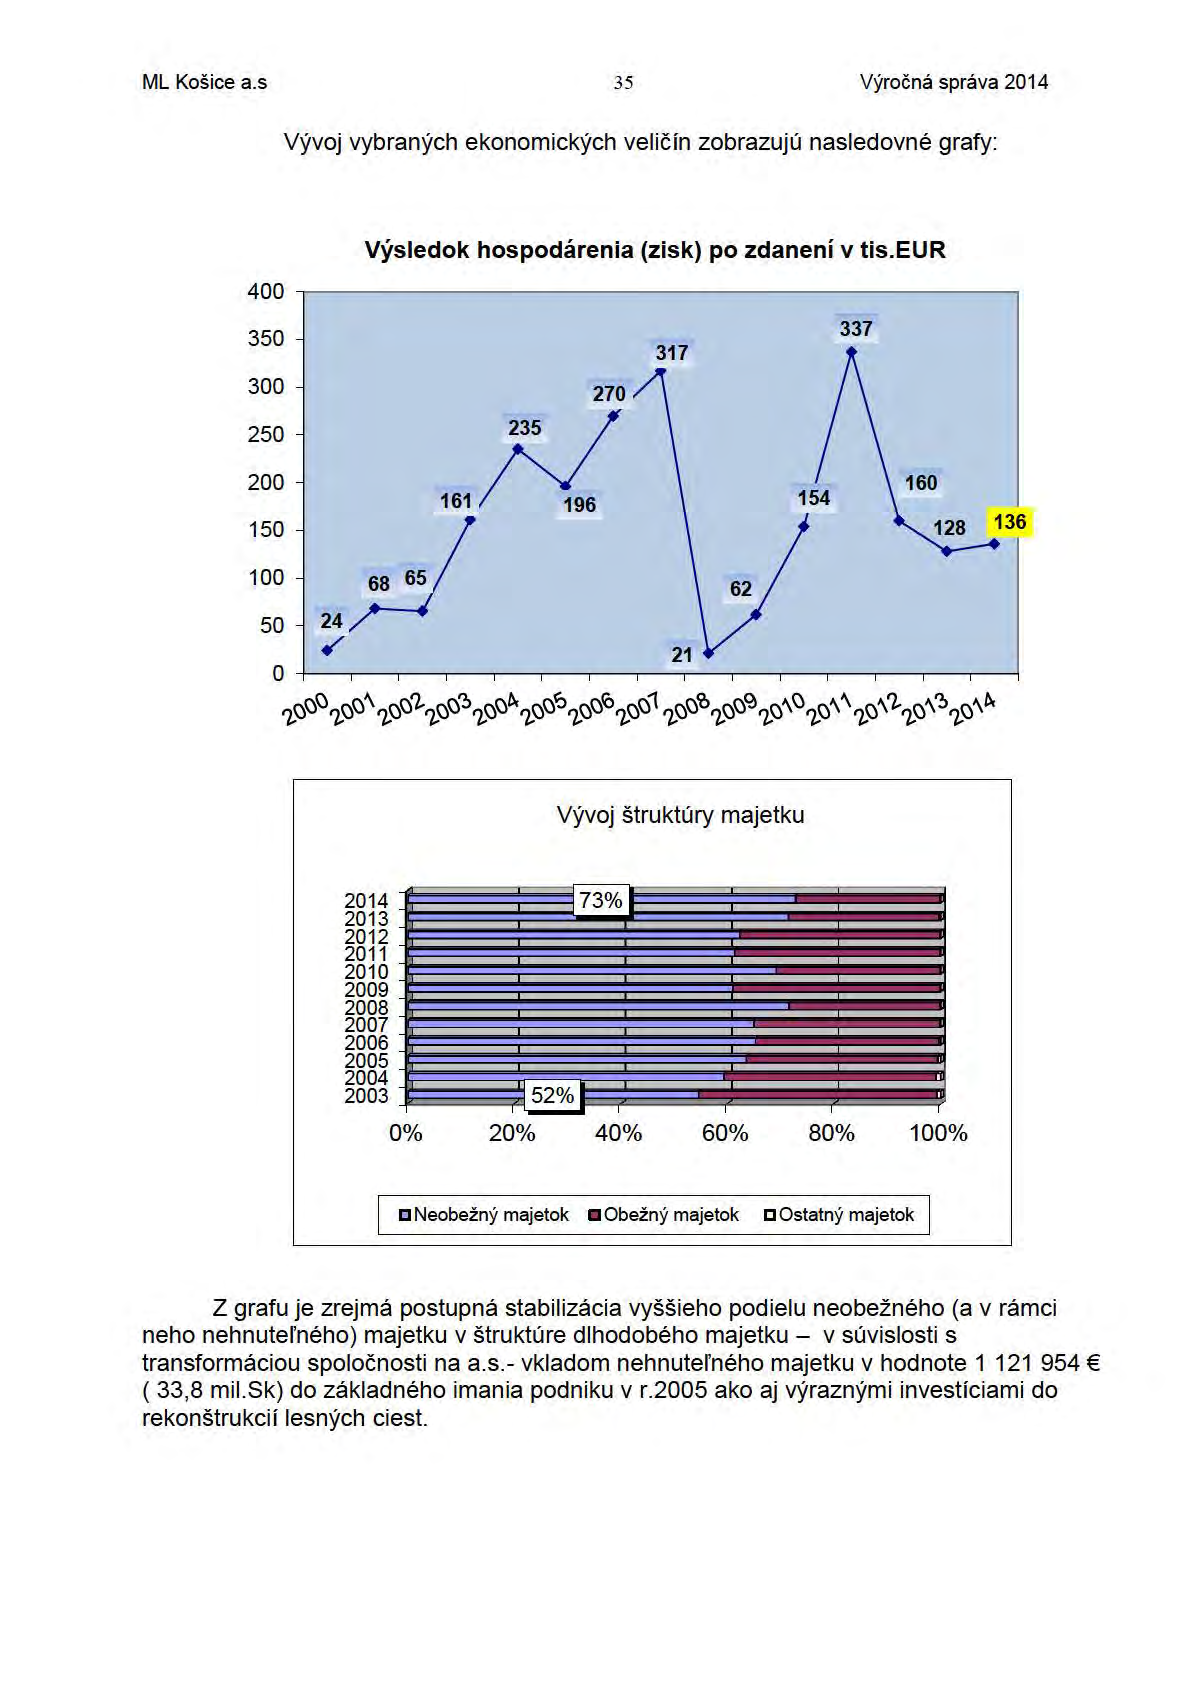 ML Košice a.s 35 Výročná správa 2014 Vývoj vybraných ekonomických ve l ič ín zobrazujú nasledovné grafy: 400 350 Výsledok hospodárenia (zisk) po zdanení v tis. EUR 300 270 250 ;v.